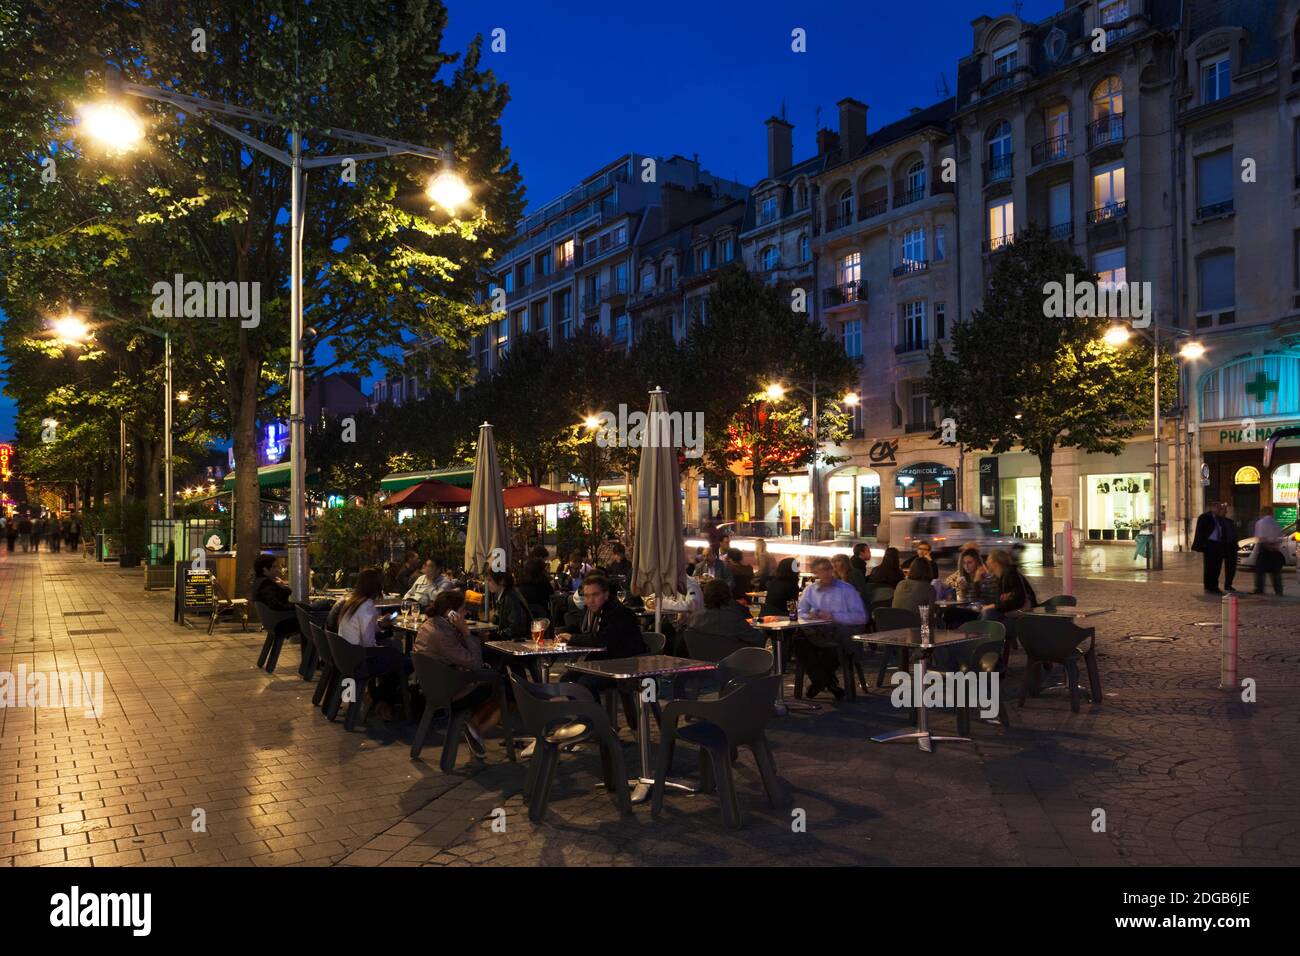 Menschen an Straßencafés in einer Stadt, Place Drouet d'Erlon, Reims, Marne, Champagne-Ardenne, Frankreich Stockfoto